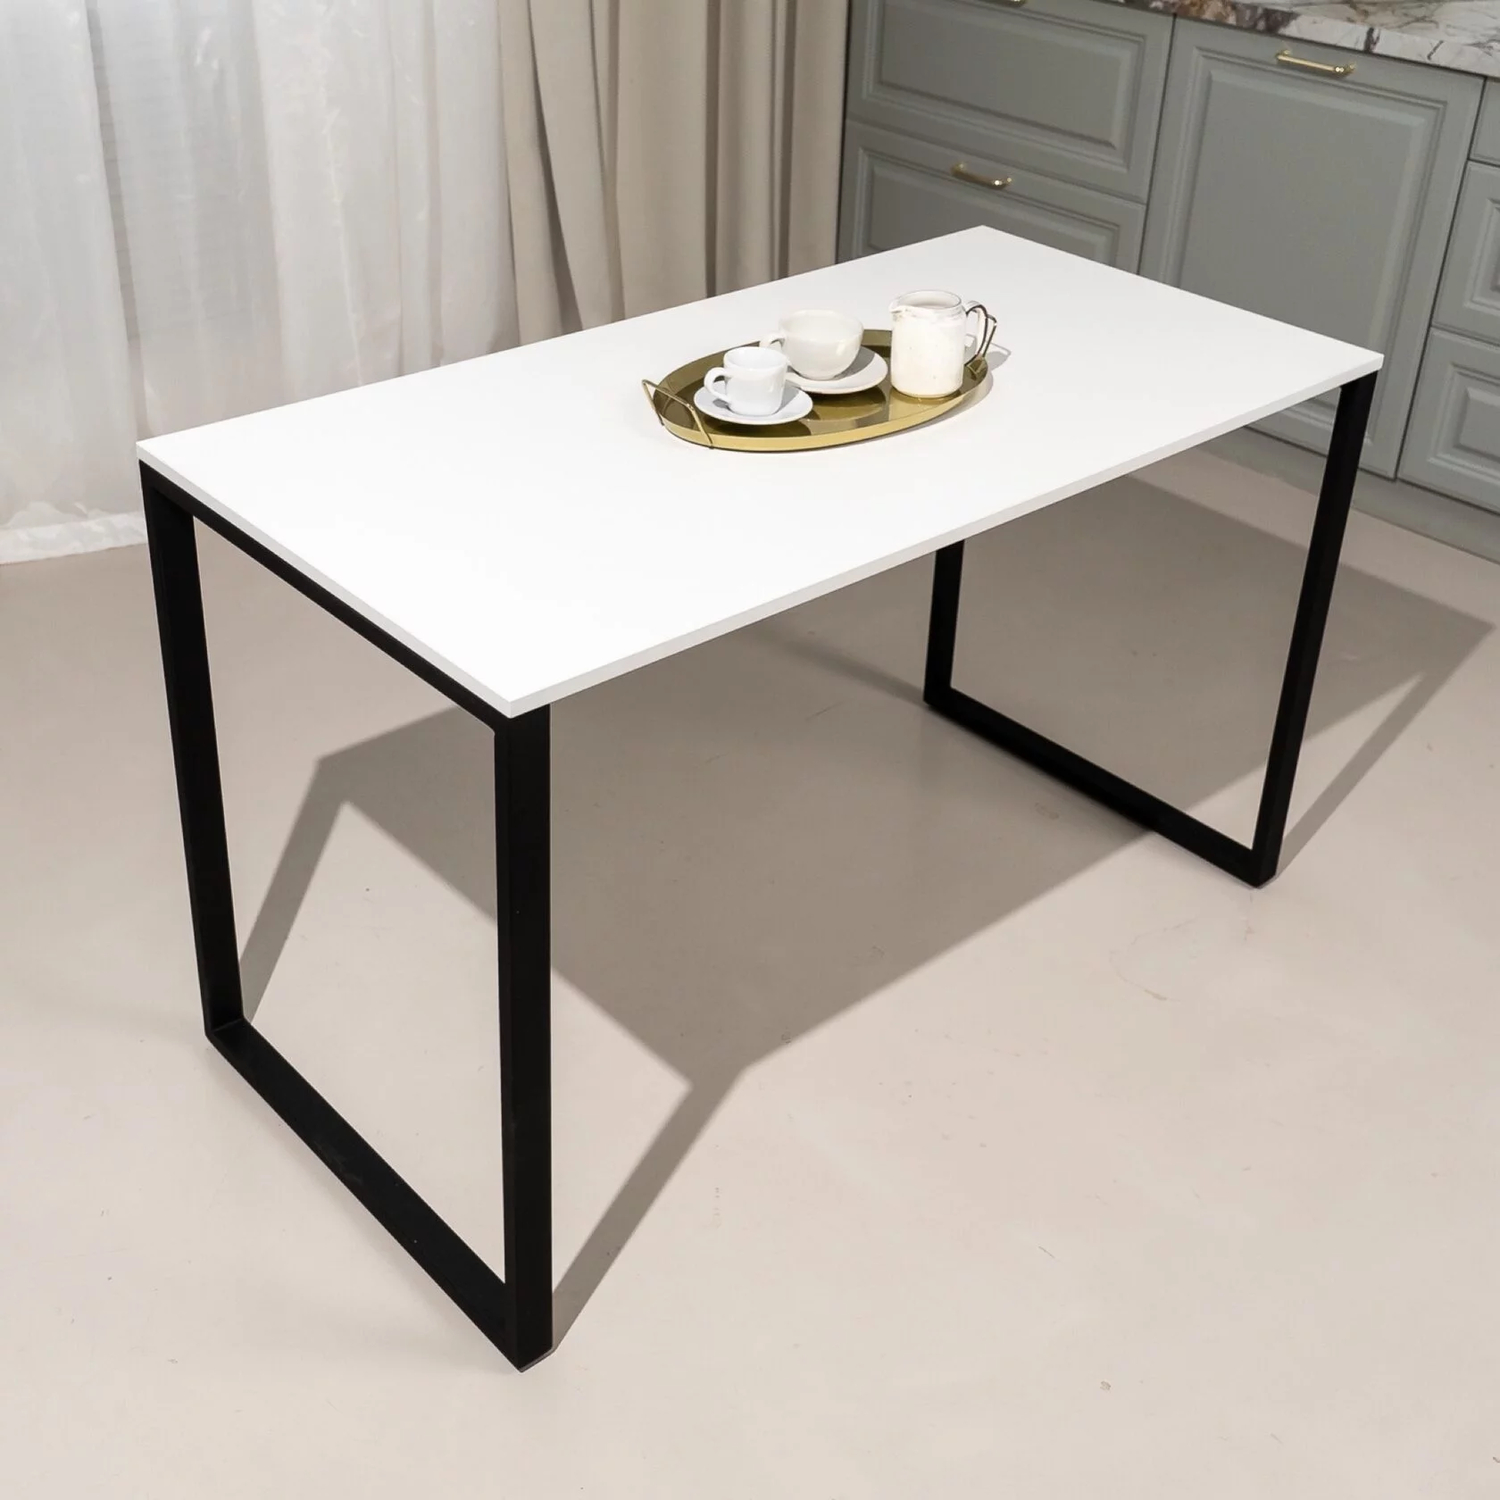 Купить прямоугольный обеденный стол в стиле LOFT Белого цвета